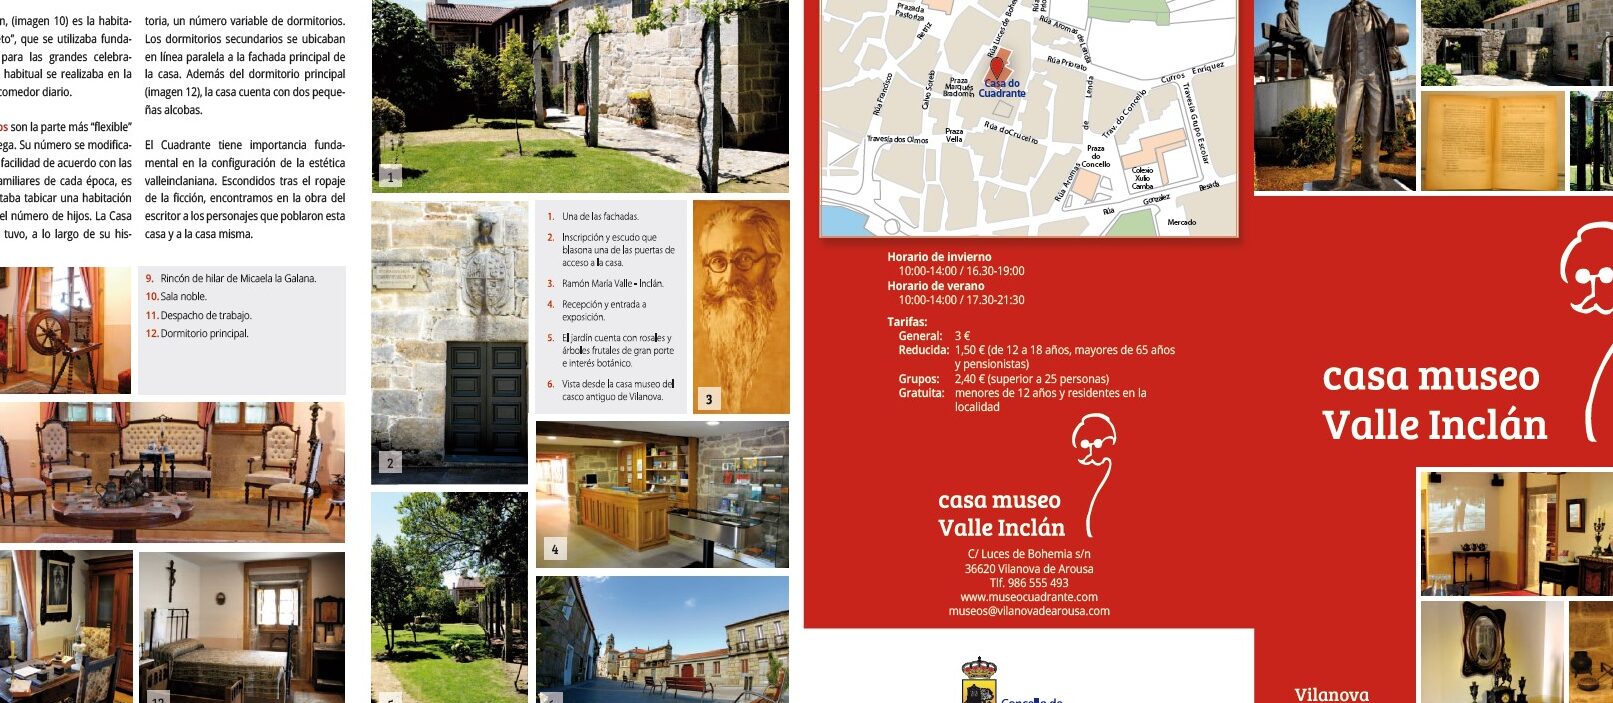 CASA MUSEO VALLE-INCLÁN		Vilanova de Arousa	Pontevedra	Museo